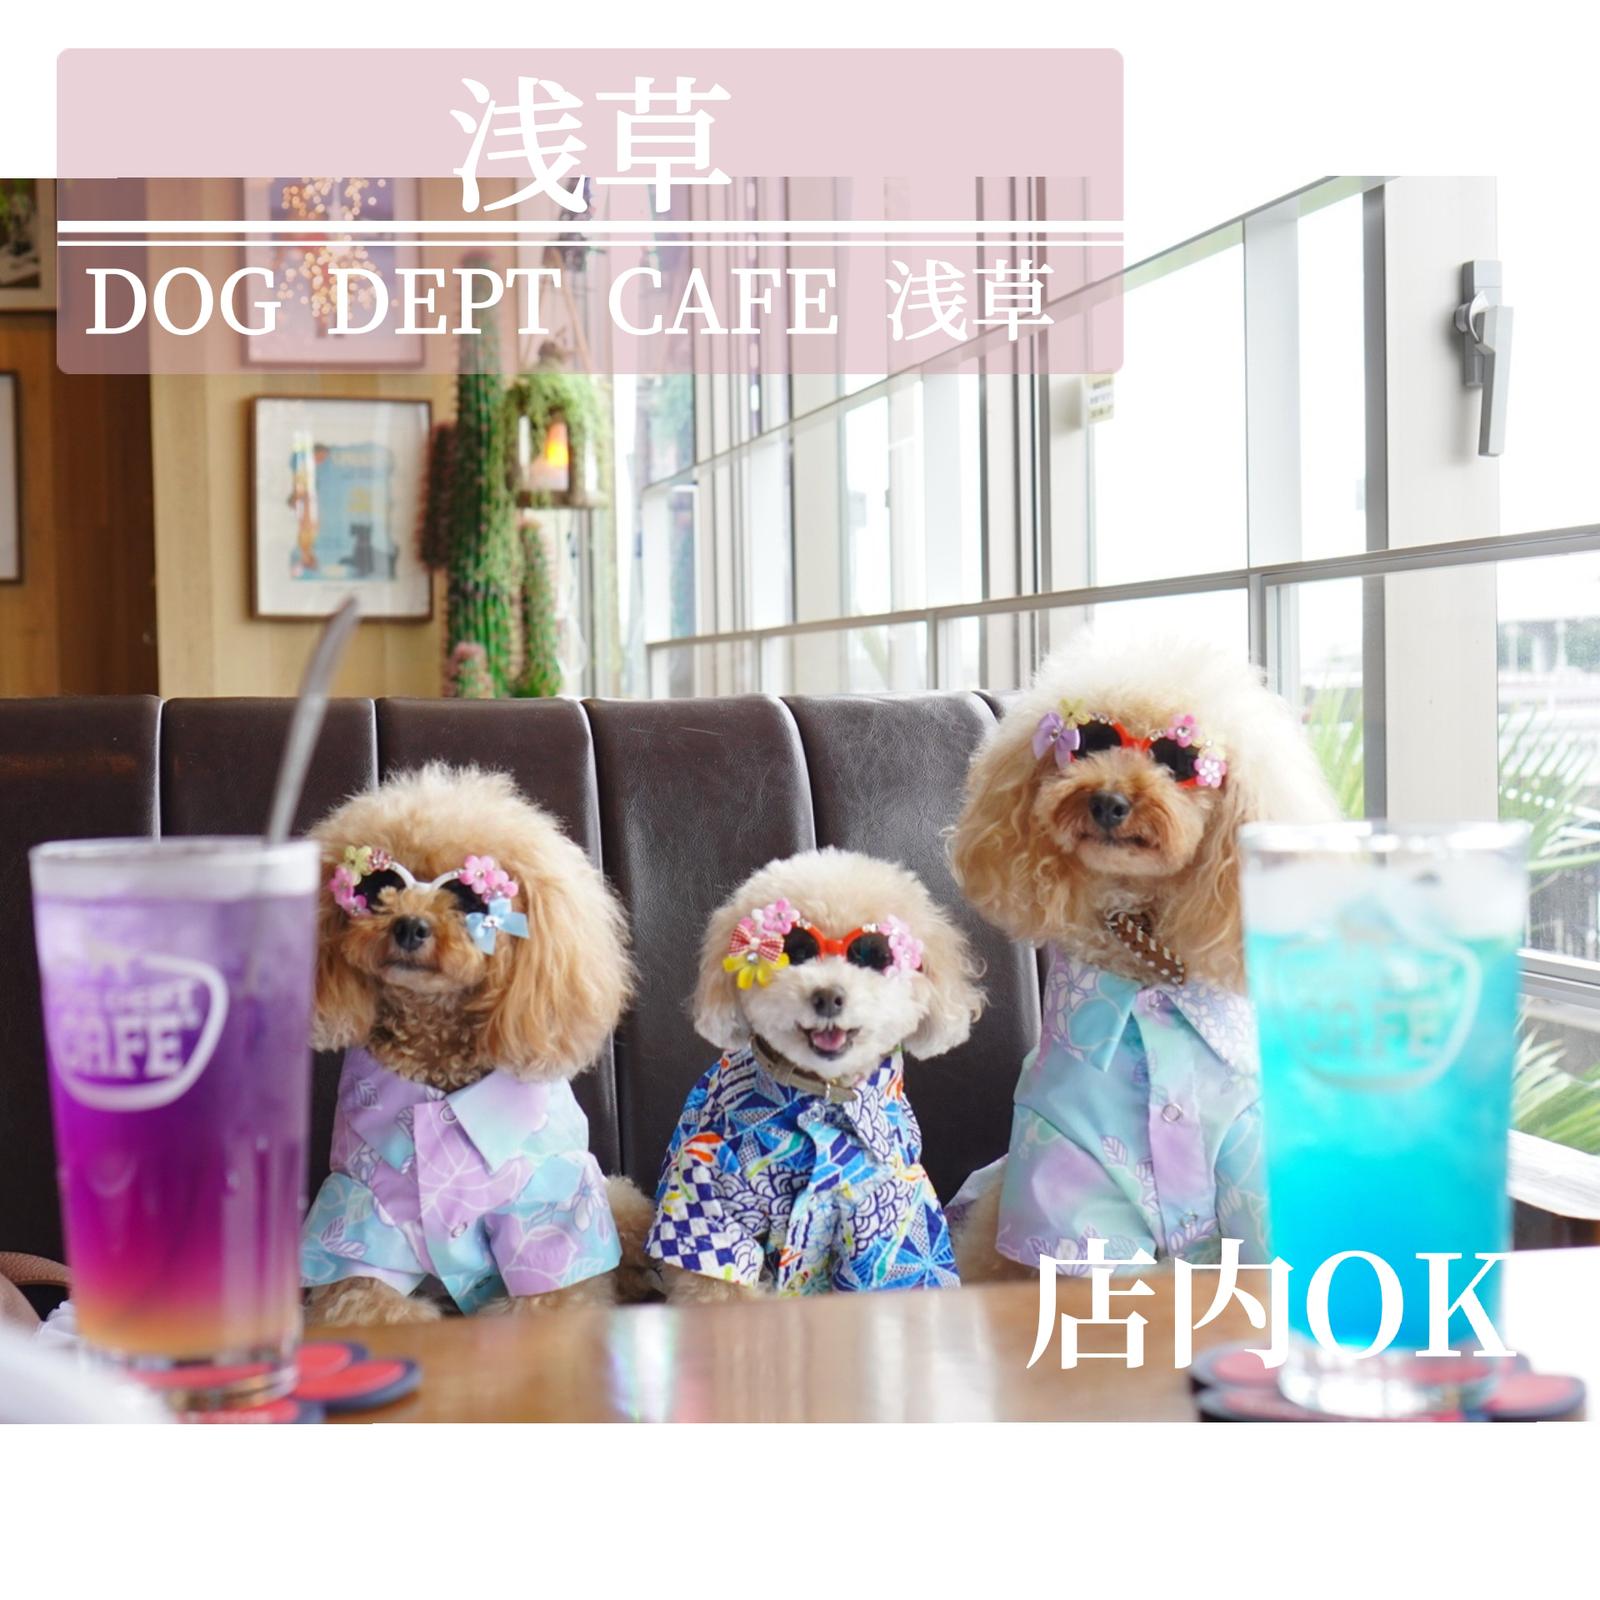 浅草ドッグカフェ Dog Dept Cafe 浅草 隅田川テラス店 ドッグカフェはありがたい プリッフィーが投稿したフォトブック Sharee